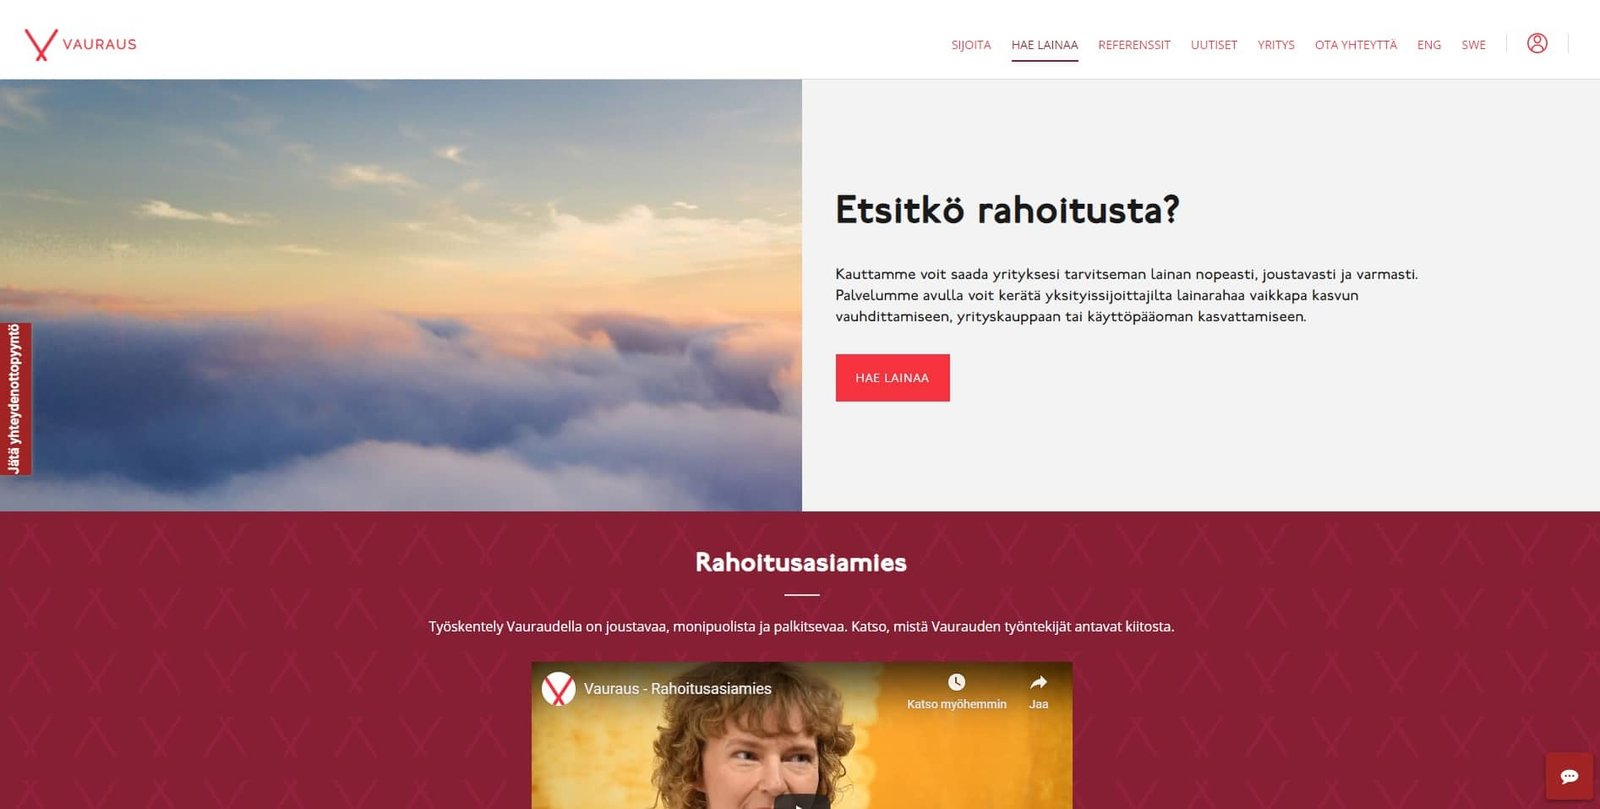 Kokemuksia Vauraus Suomen yrityslainoista on runsaasti nähtävillä netissä